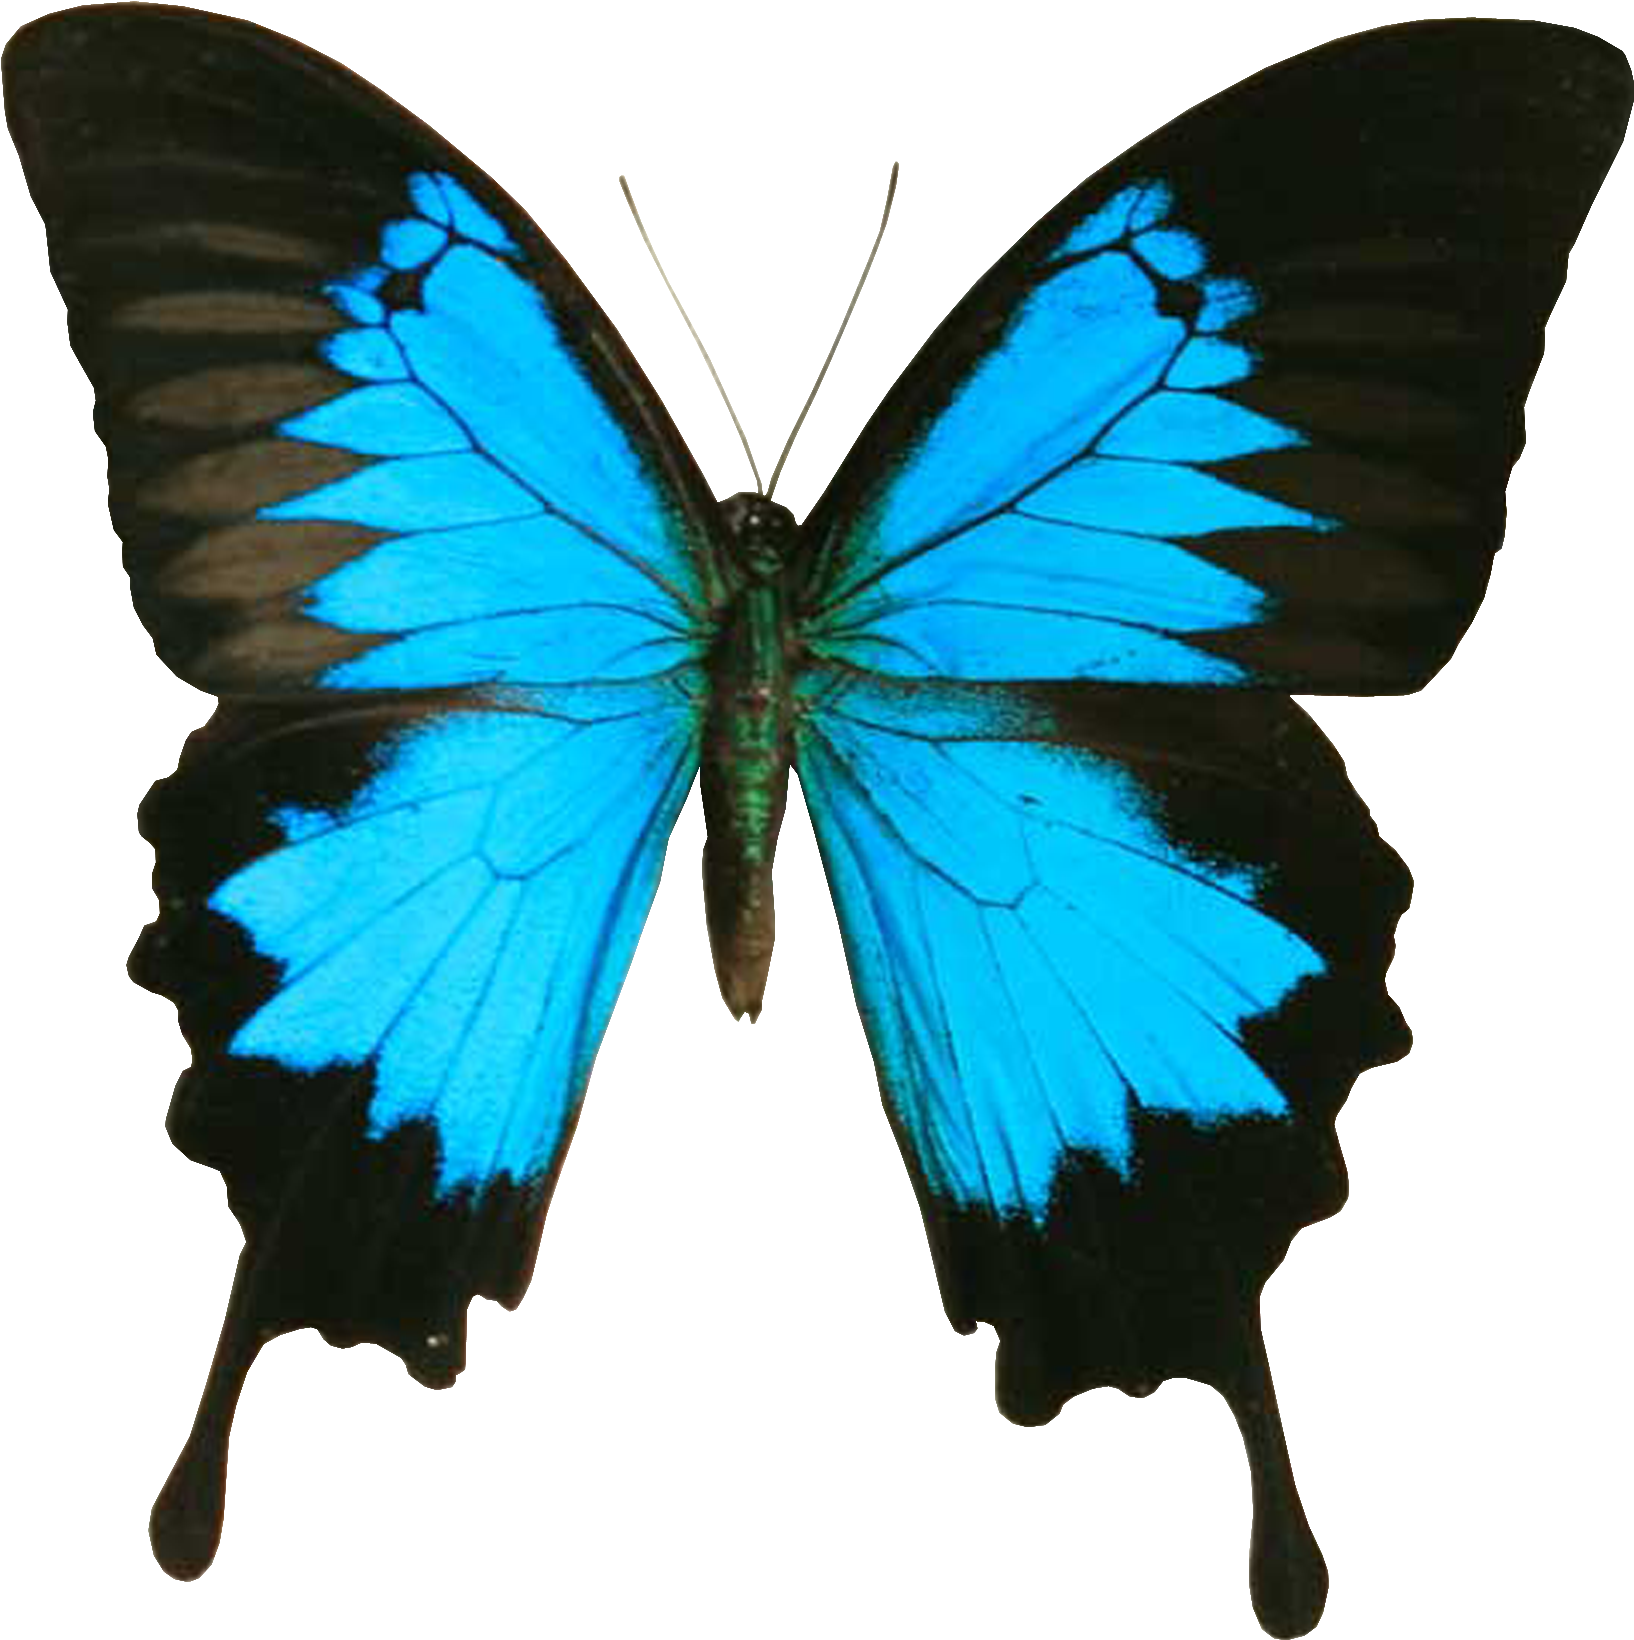 Immagine Trasparente della farfalla nera